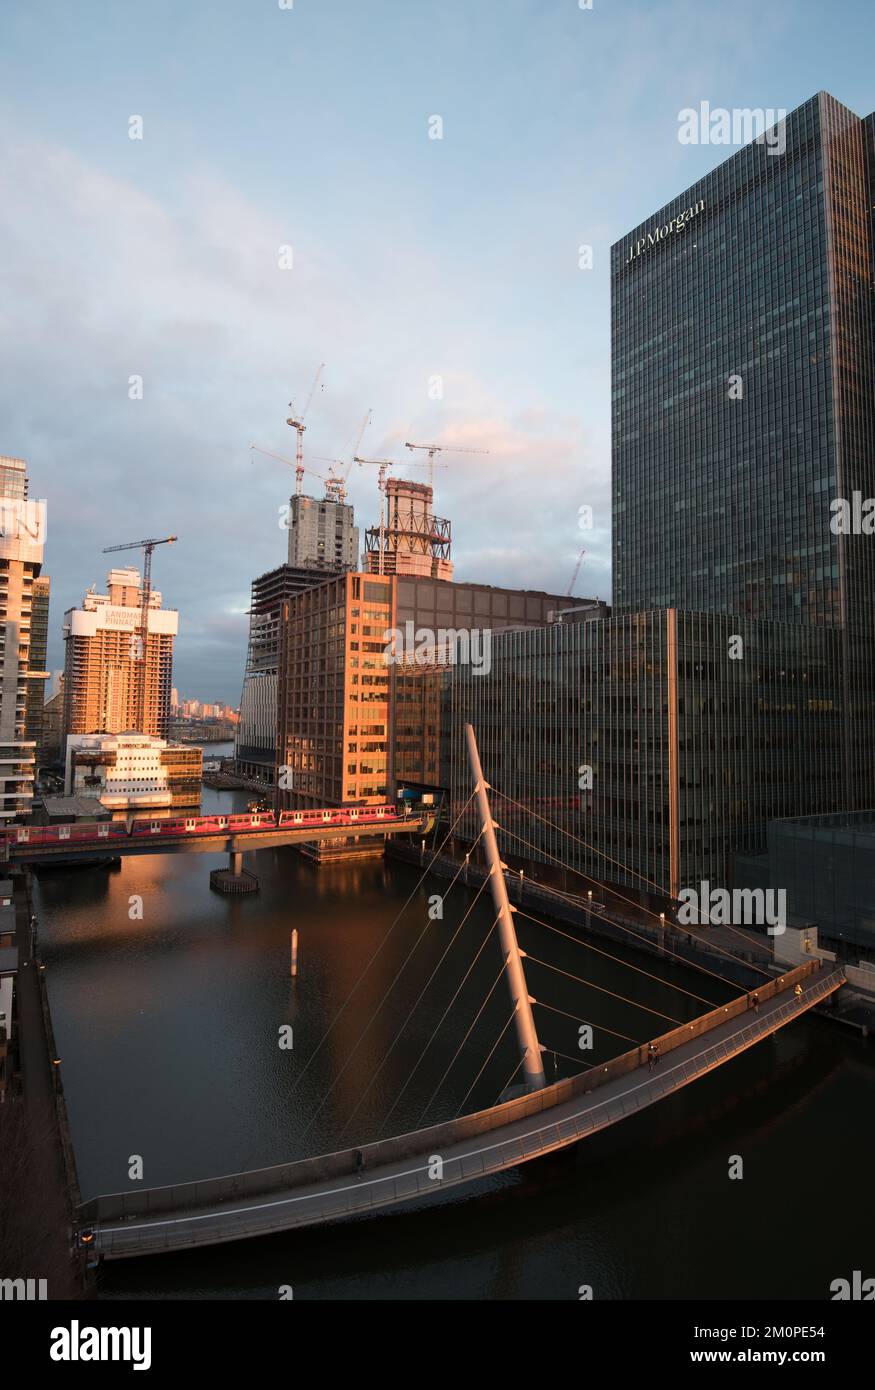 Modernes Bürogebäude im Finanzzentrum Canary Wharf bei Sonnenuntergang. London Vereinigtes Königreich Stockfoto